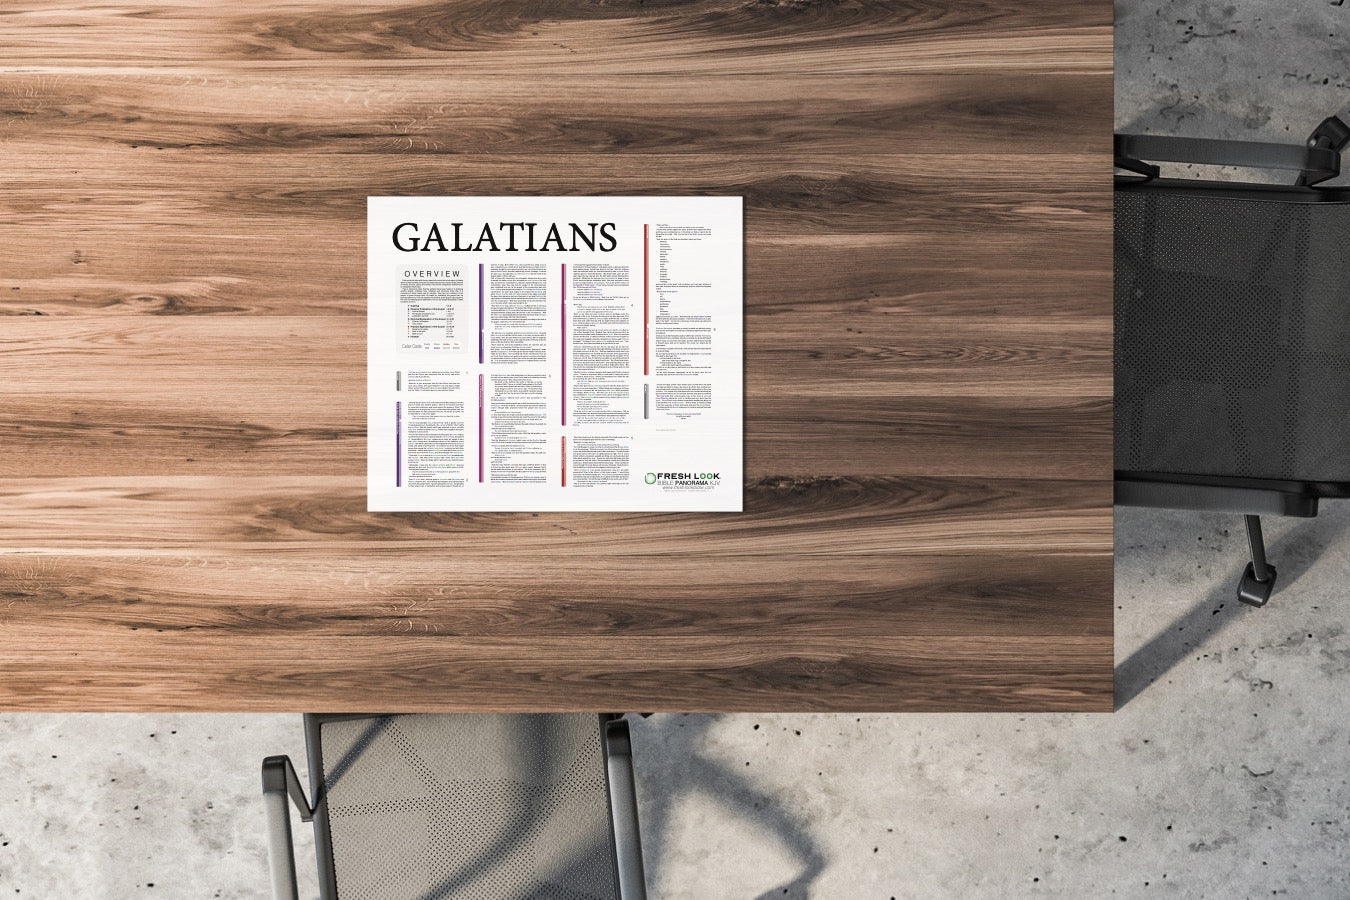 Galatians Panorama PVC